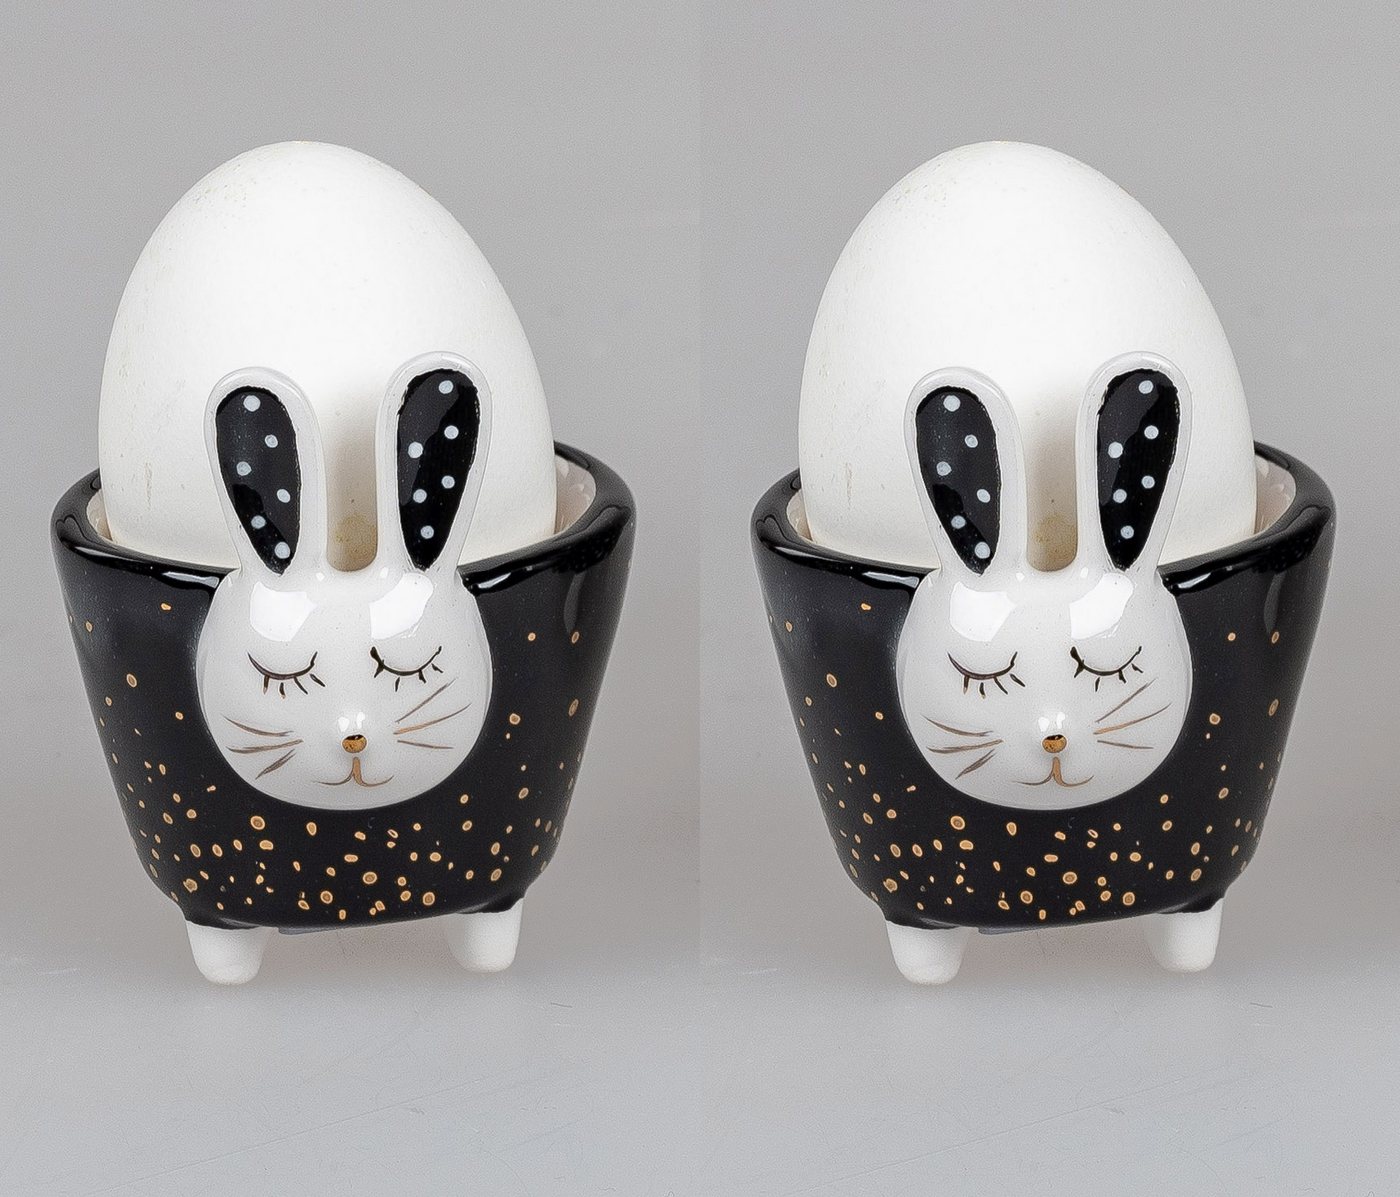 Small-Preis Eierbecher Oster Eierbecher von Formano im 2er Set schwarz weiß Trend Style, aus Keramik von Small-Preis